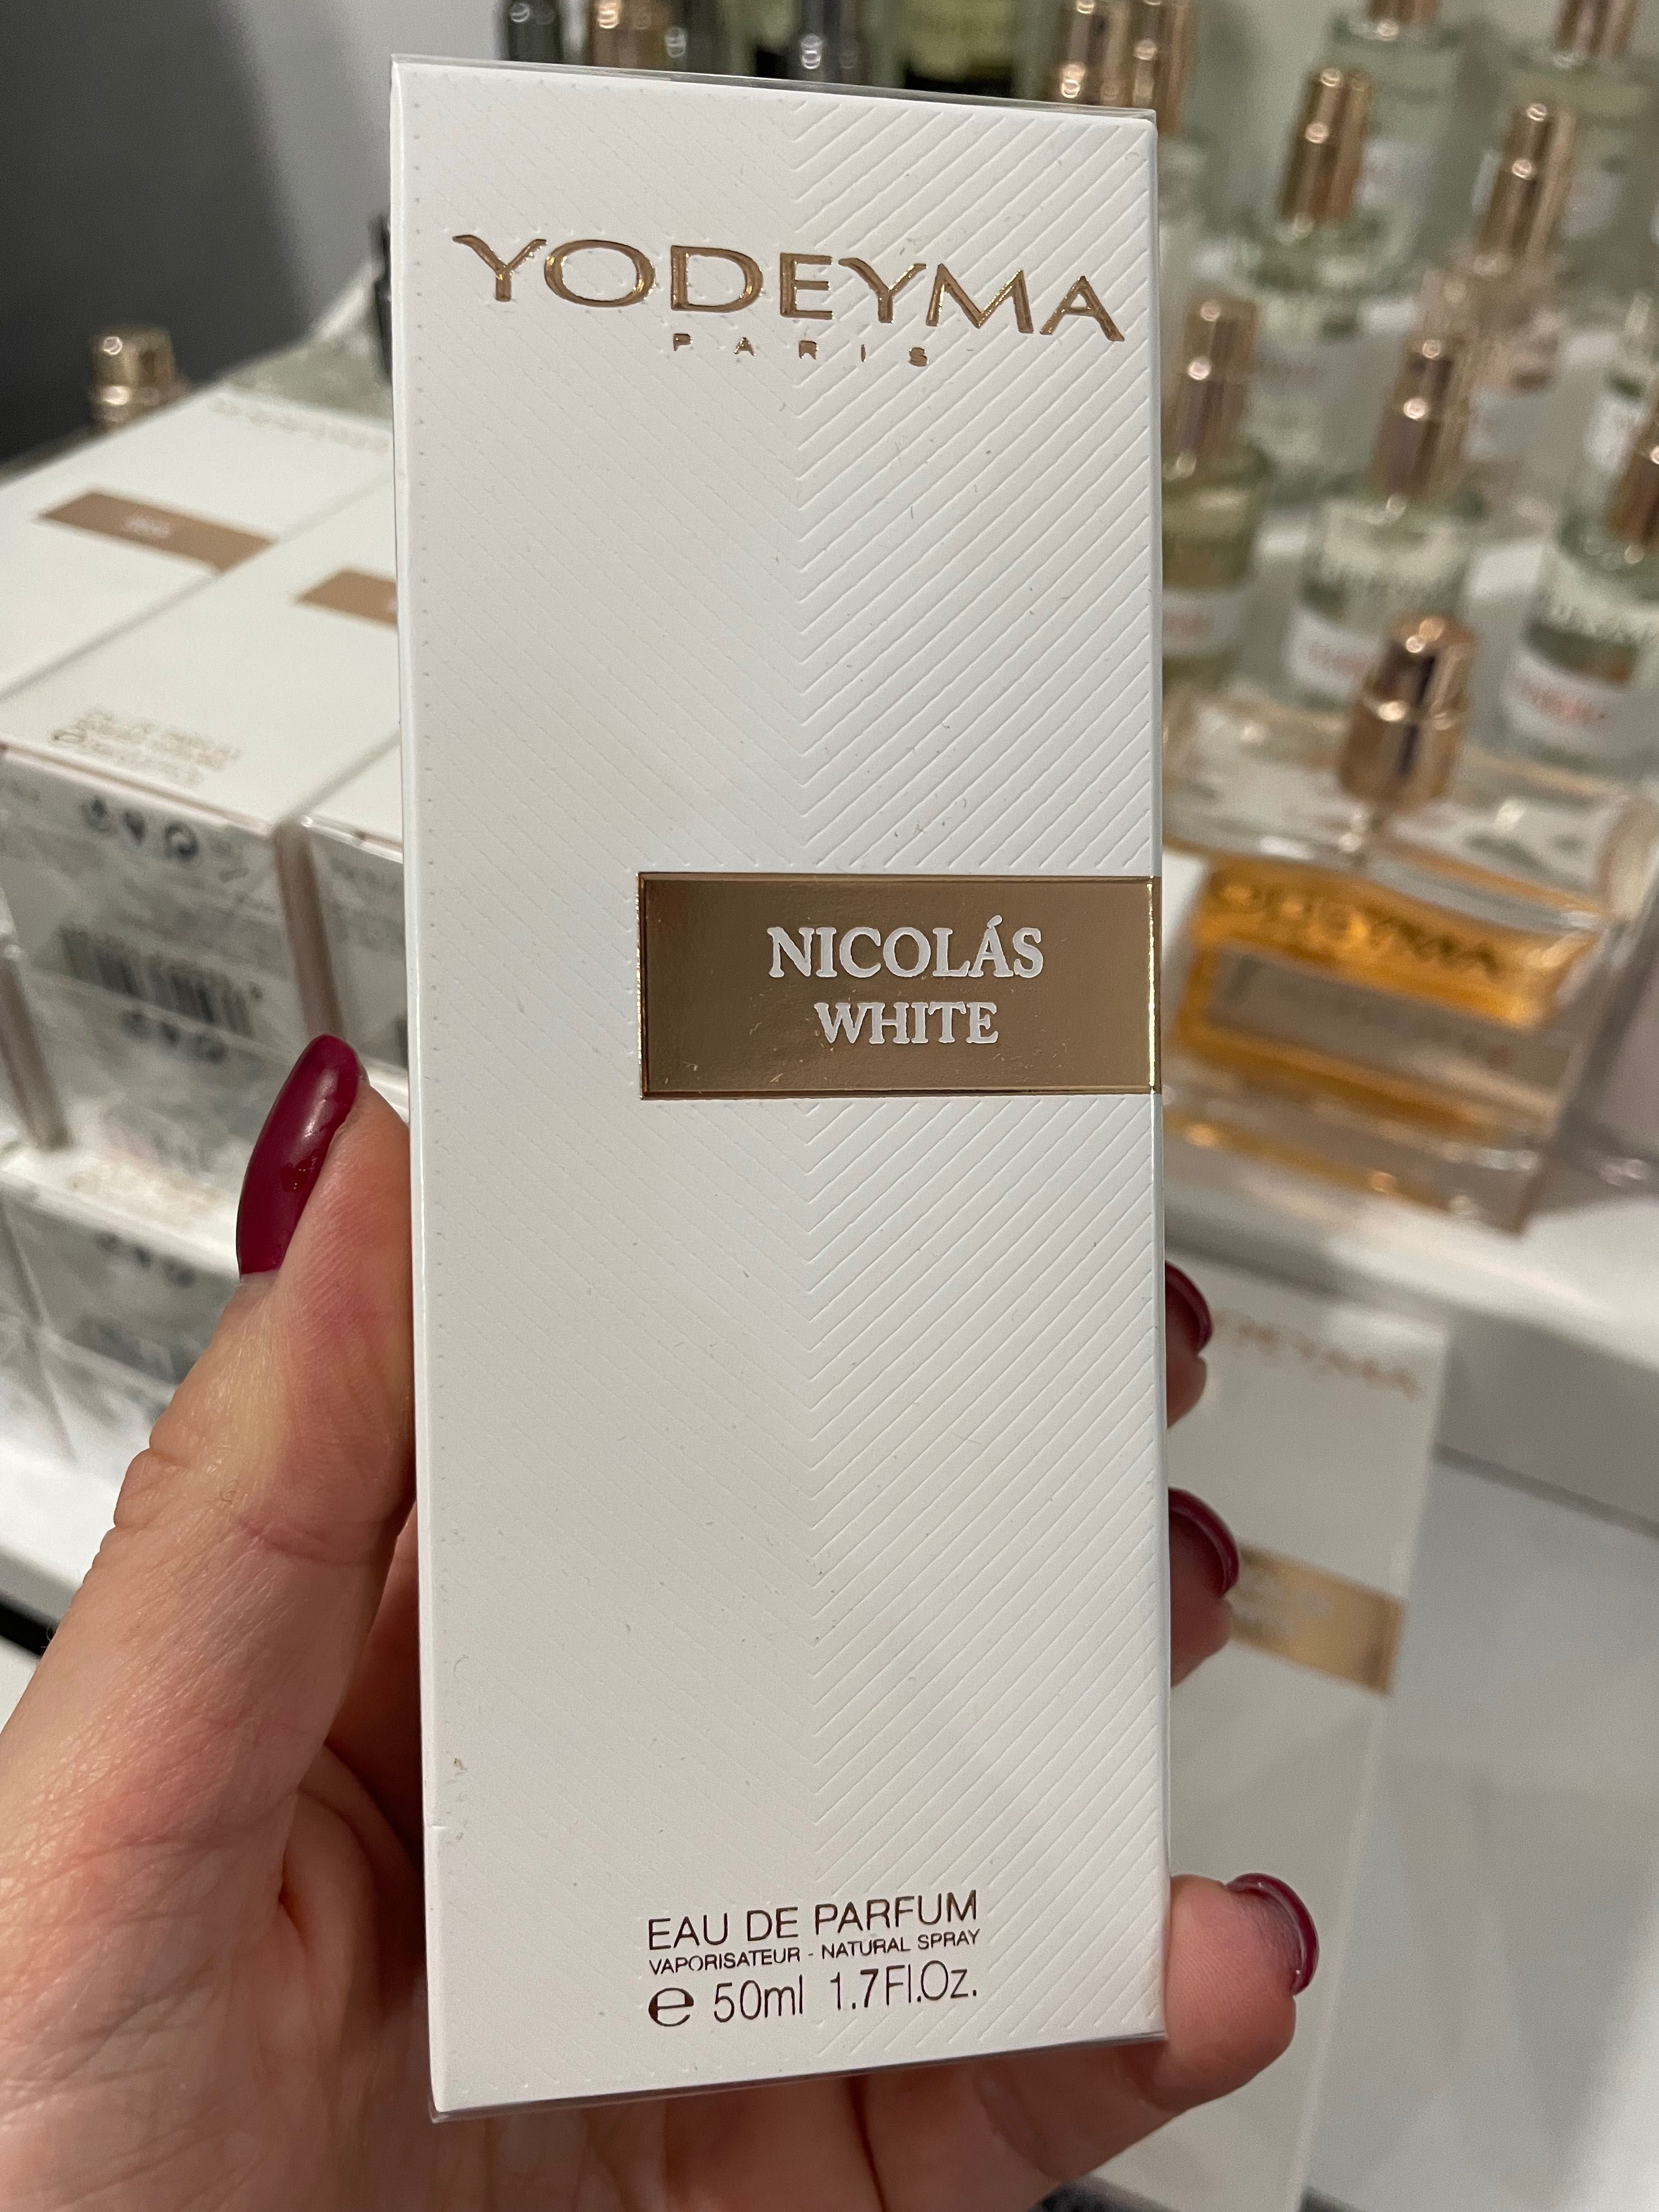 Nikolas white 50 ml perfumy Yodeyma